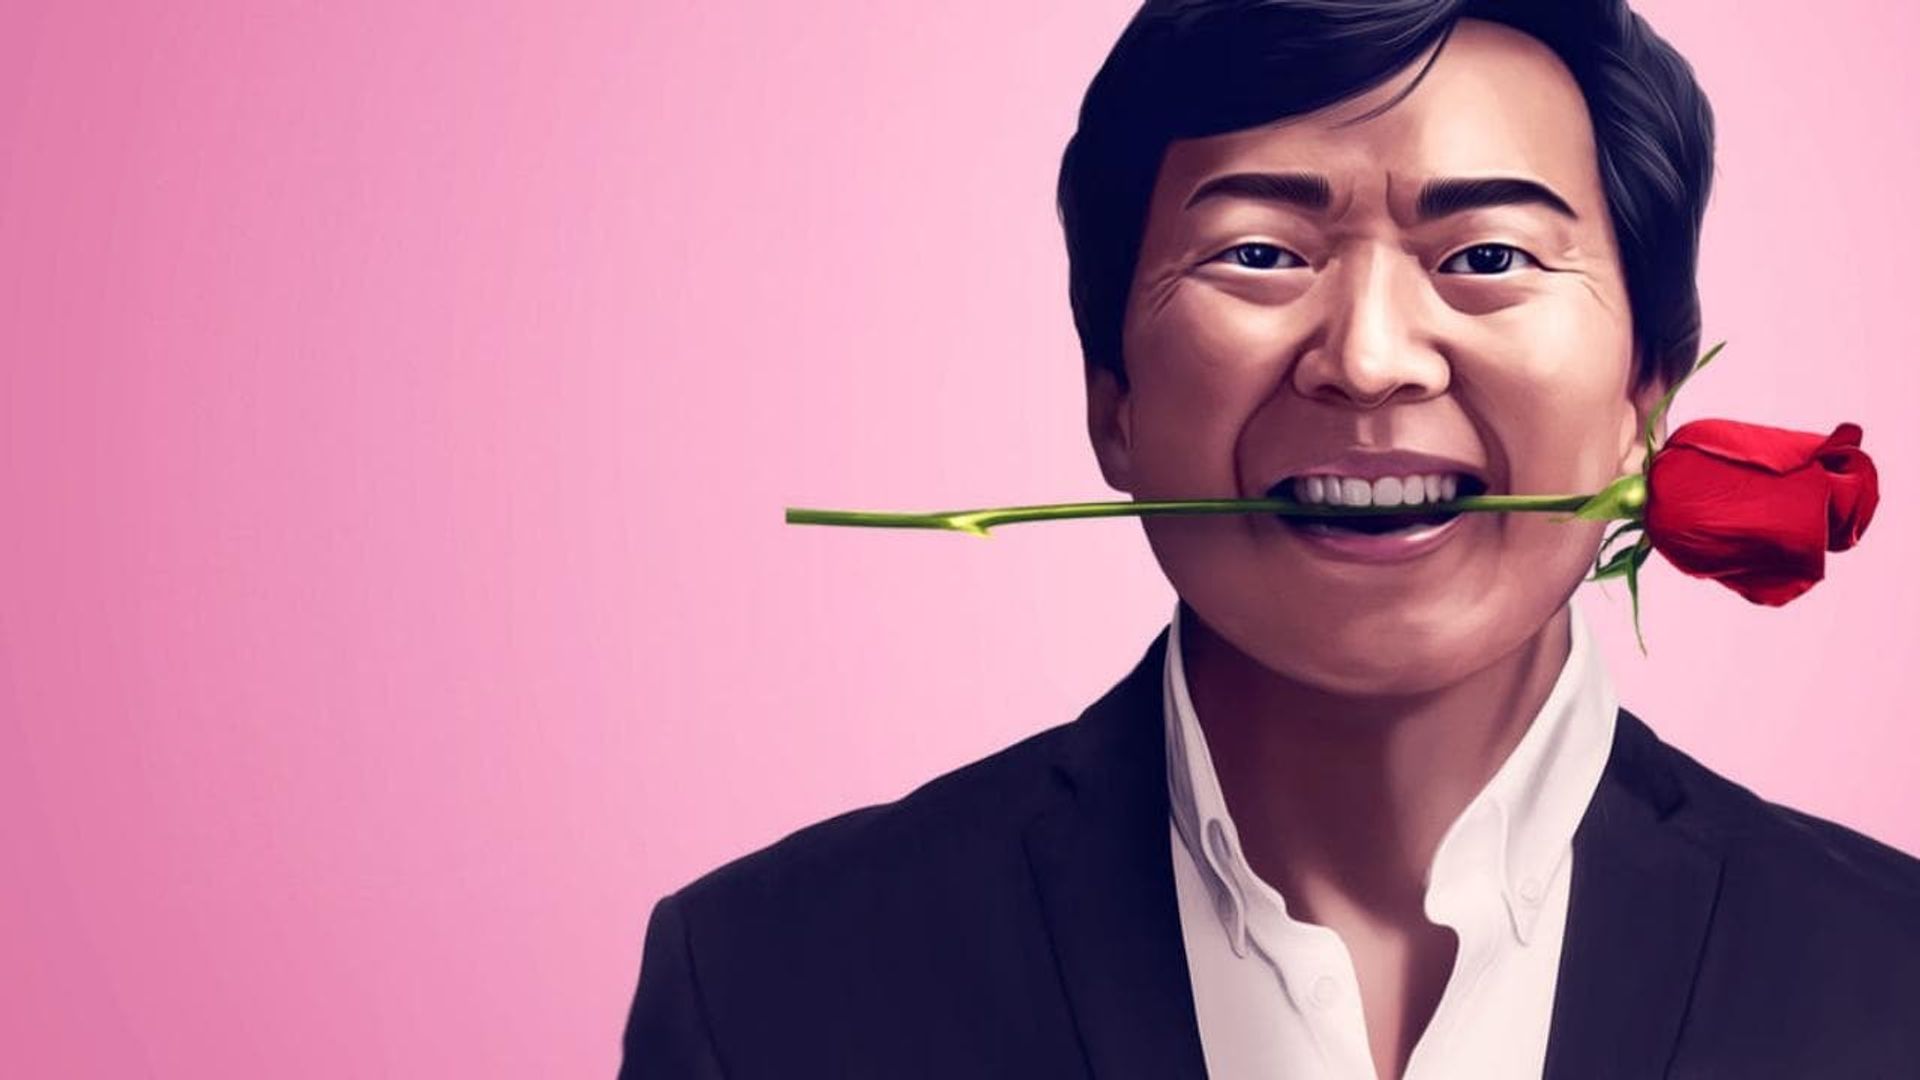 Ken Jeong: First Date background